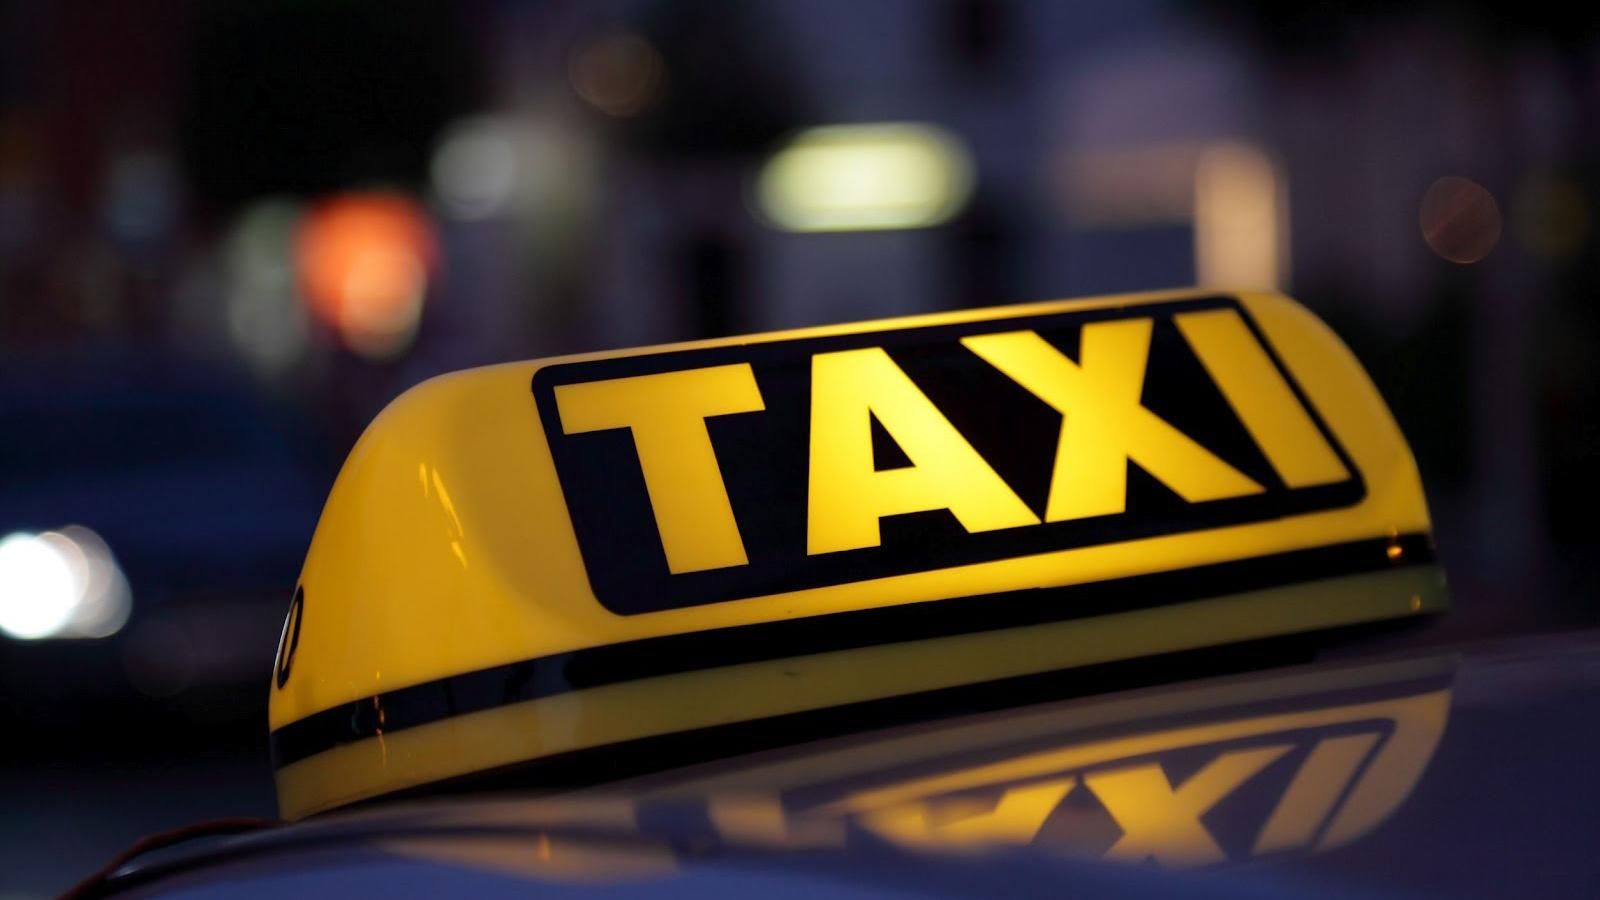 Руководство Нацбанка будет ездить на такси за 350 гривен за километр